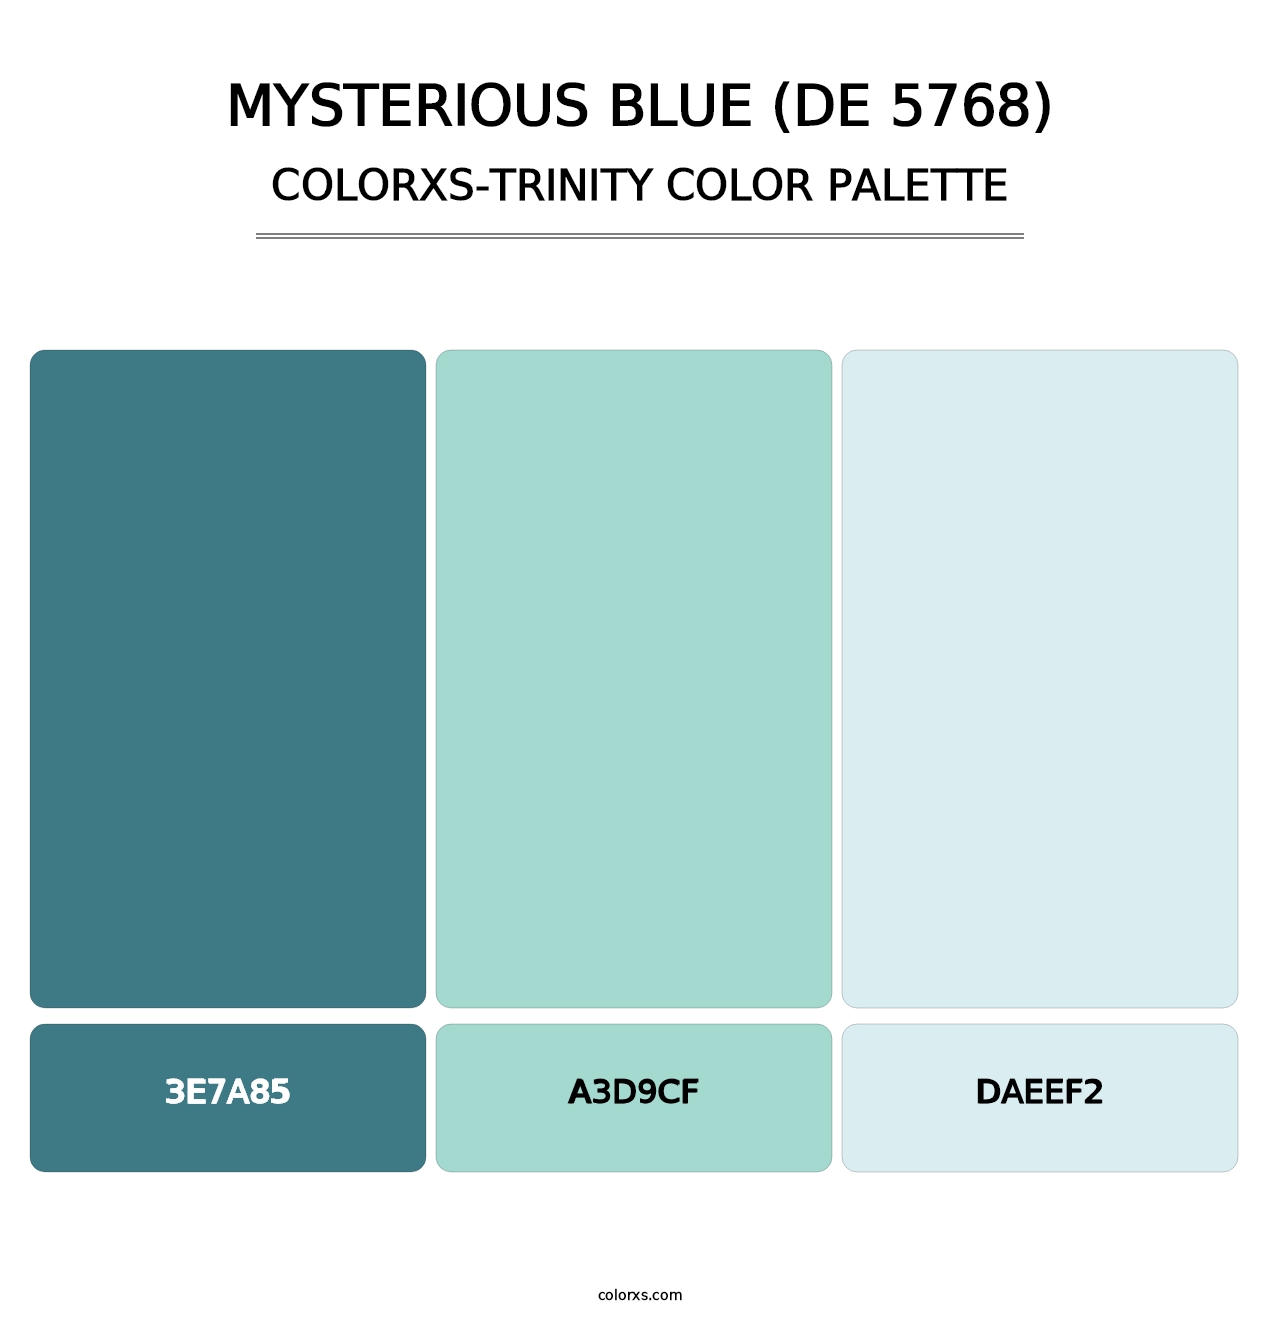 Mysterious Blue (DE 5768) - Colorxs Trinity Palette